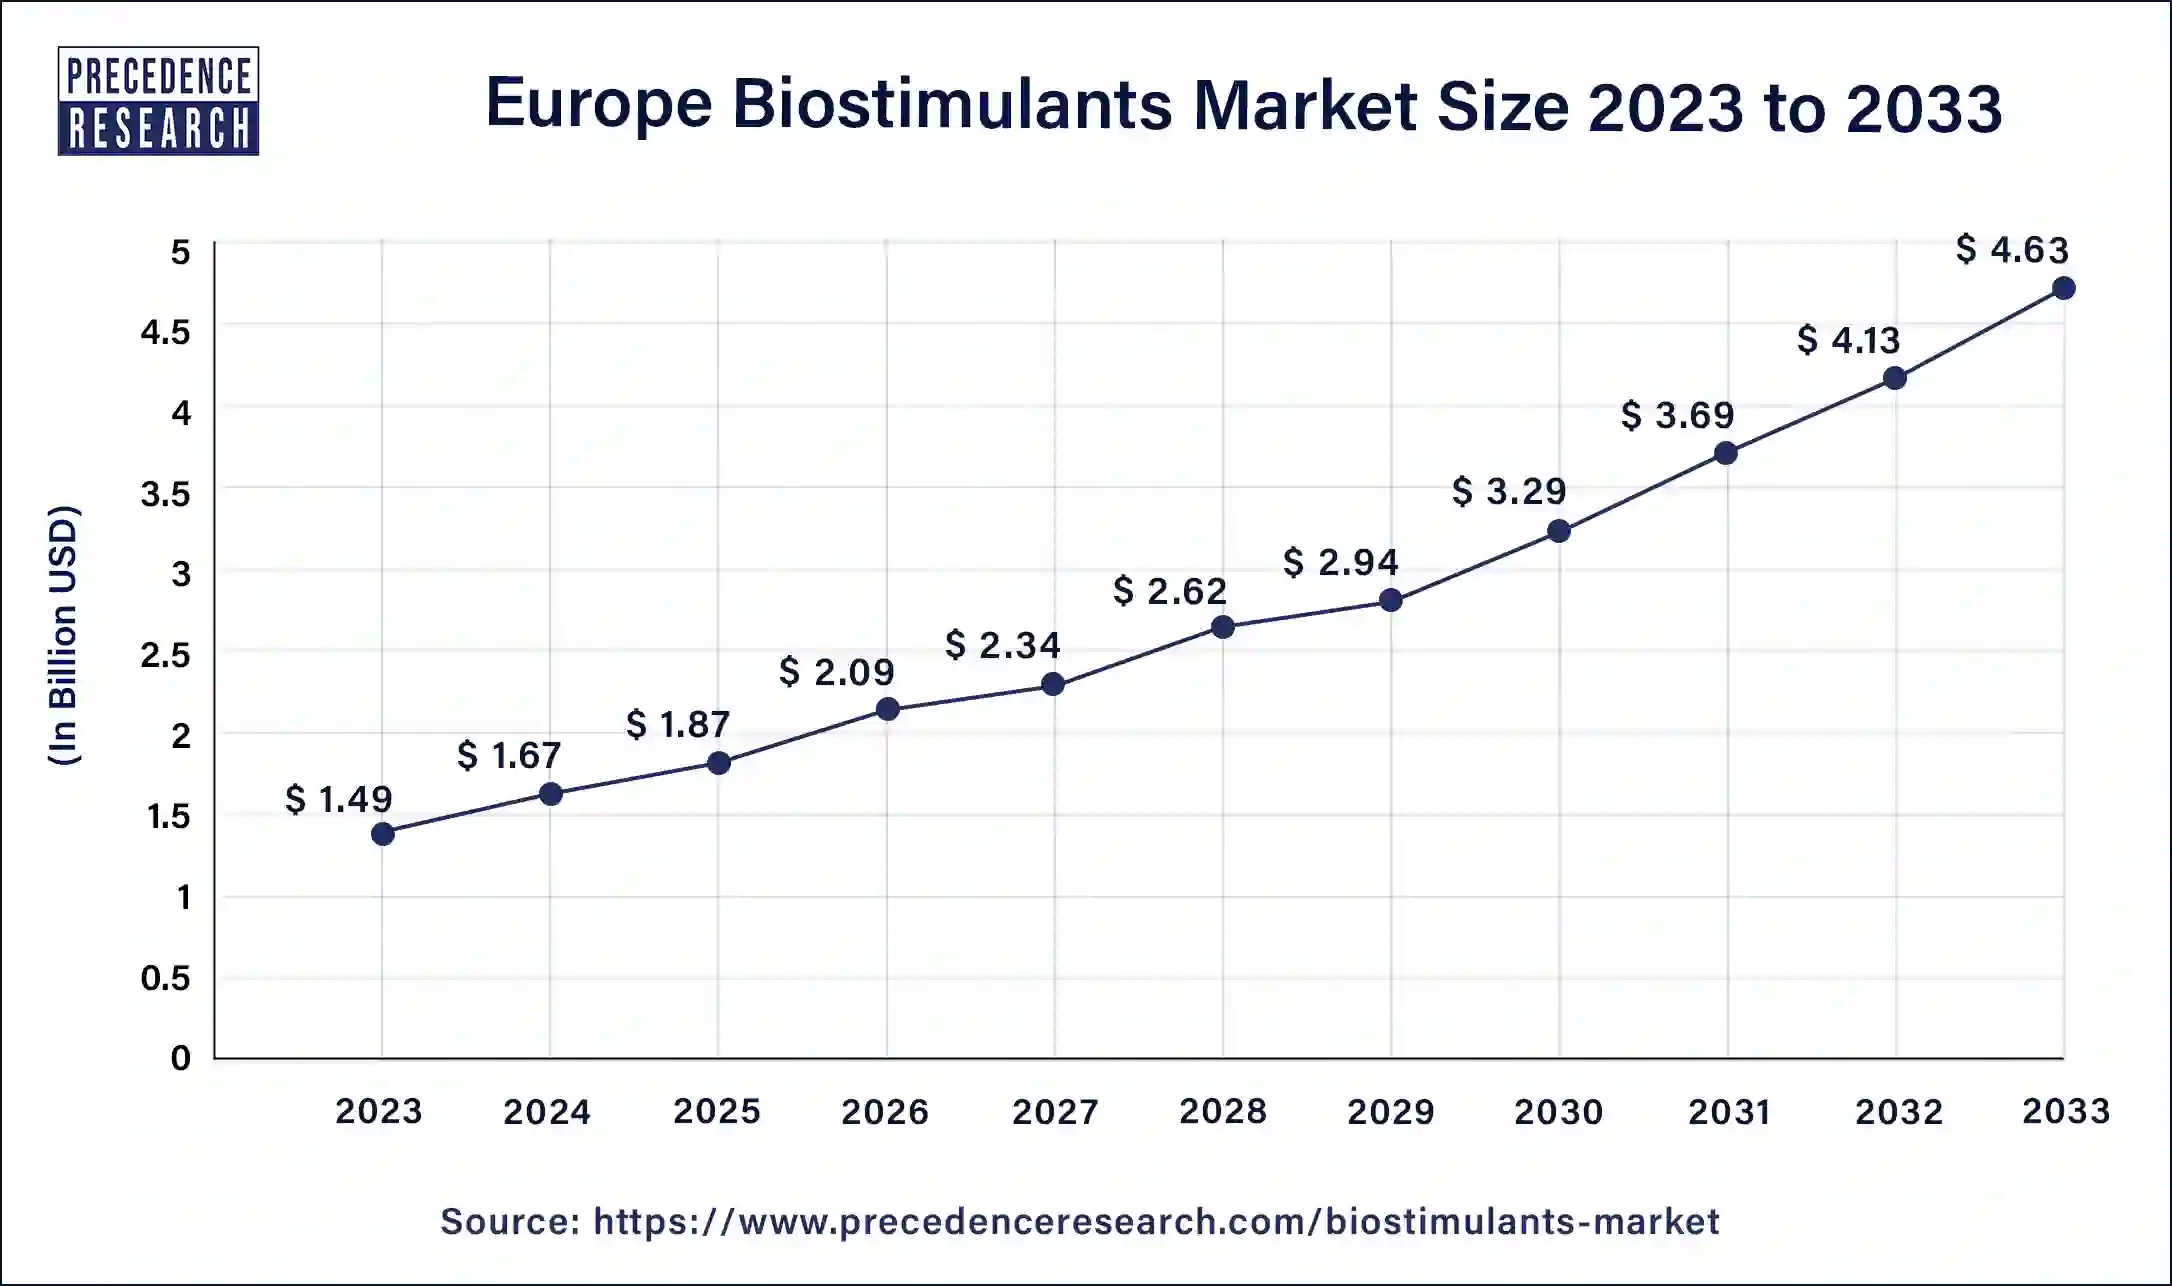 Europe Biostimulants Market Size 2024 to 2033